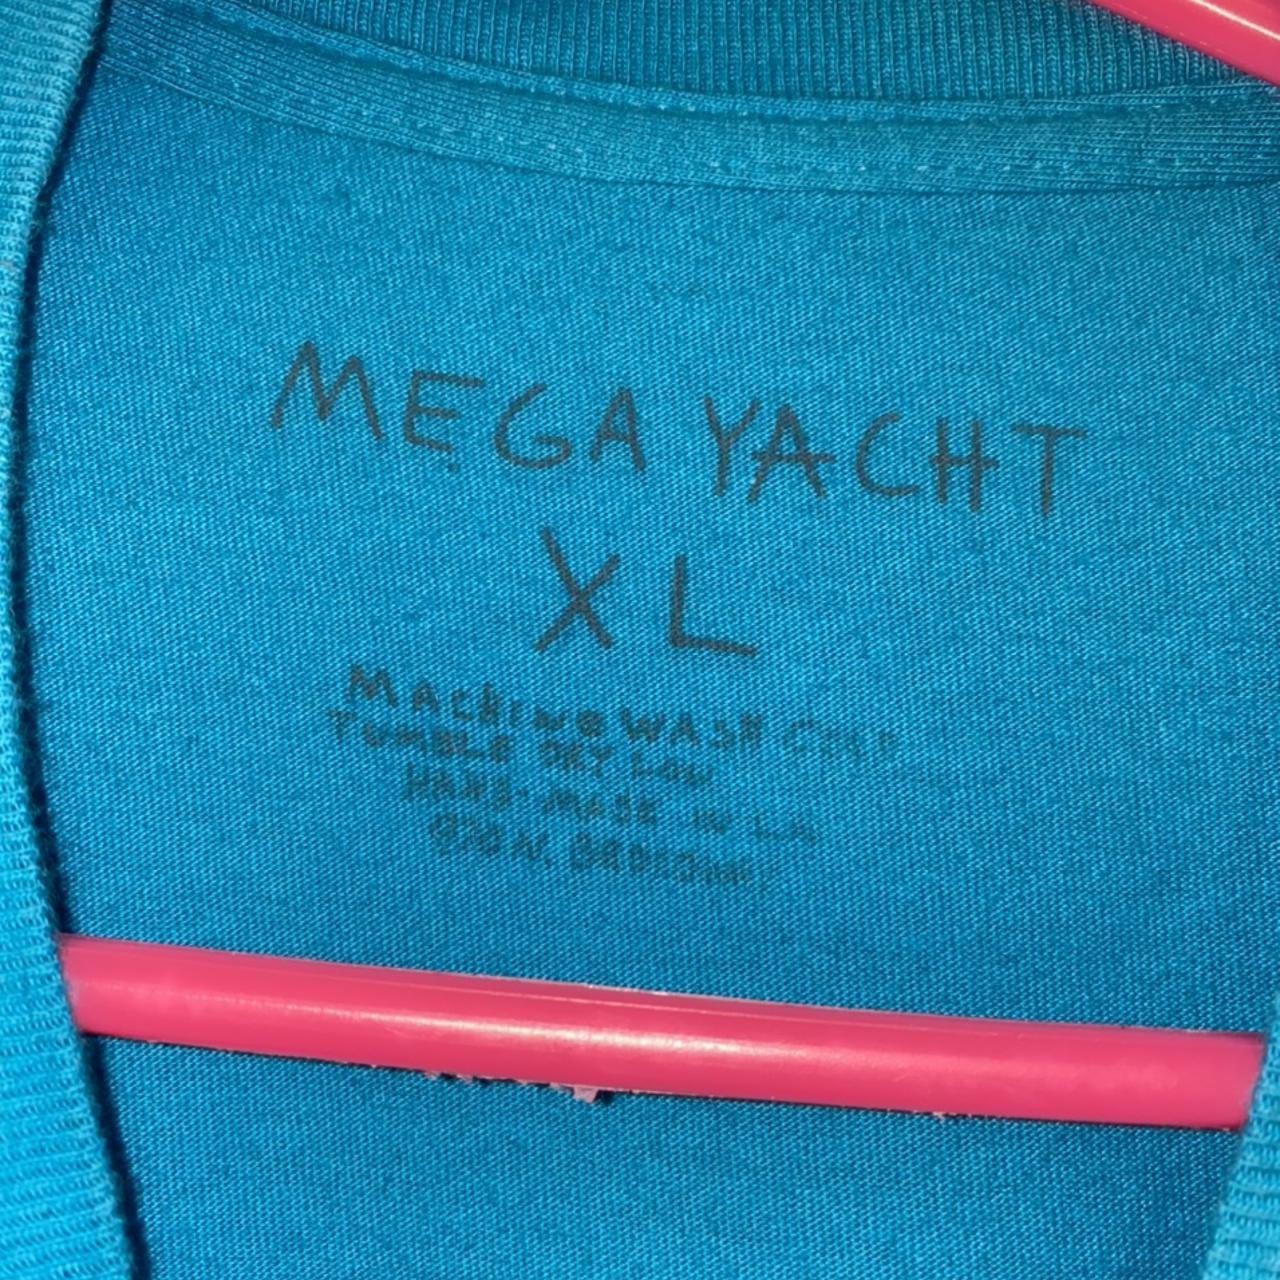 Yves saint laurent casper mega yacht shirt - Dalatshirt